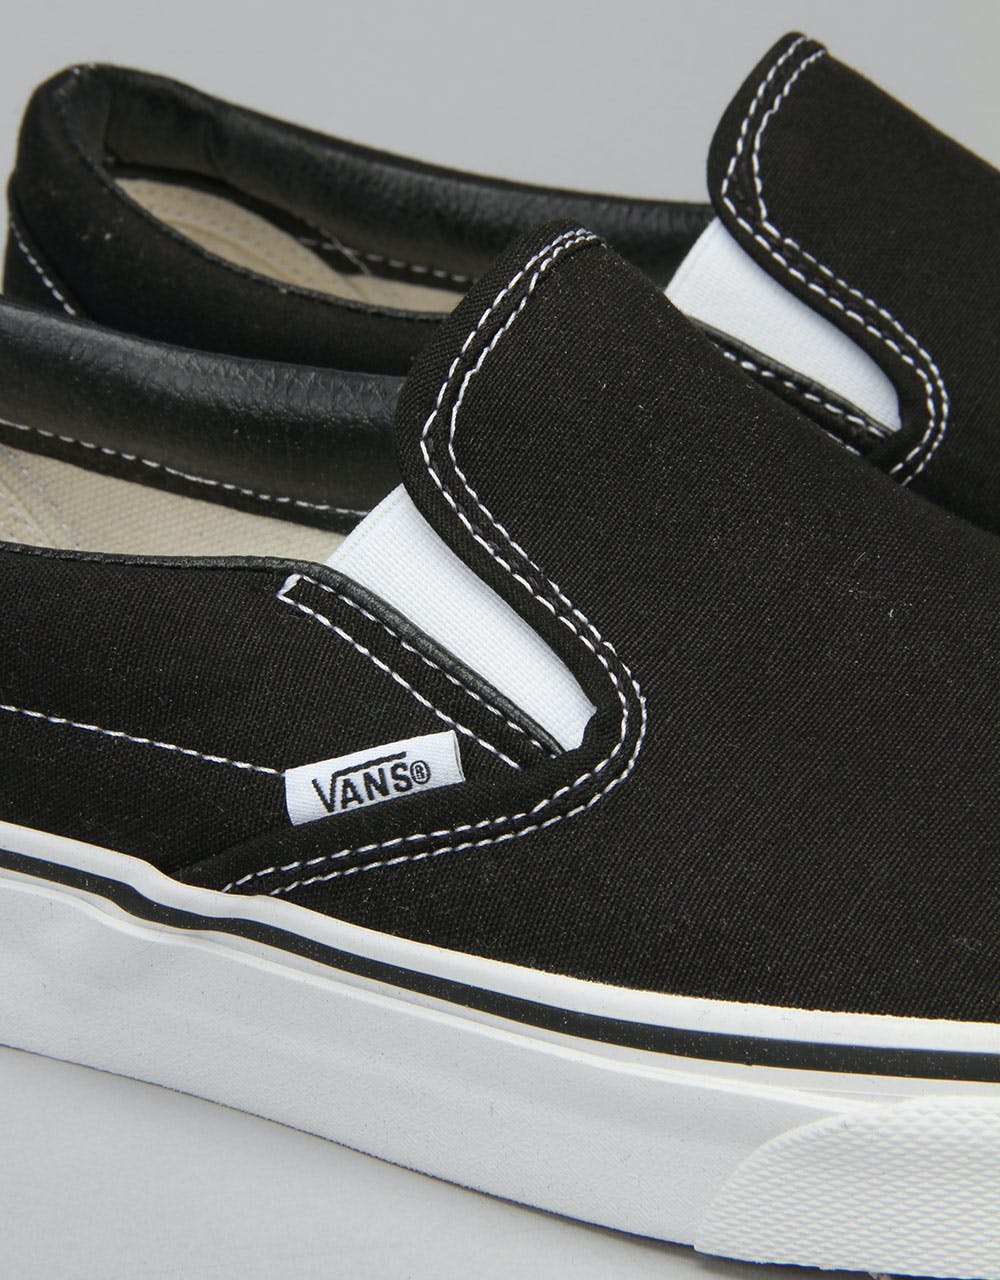 Vans Classic Slip On Skate Shoes - Black/White